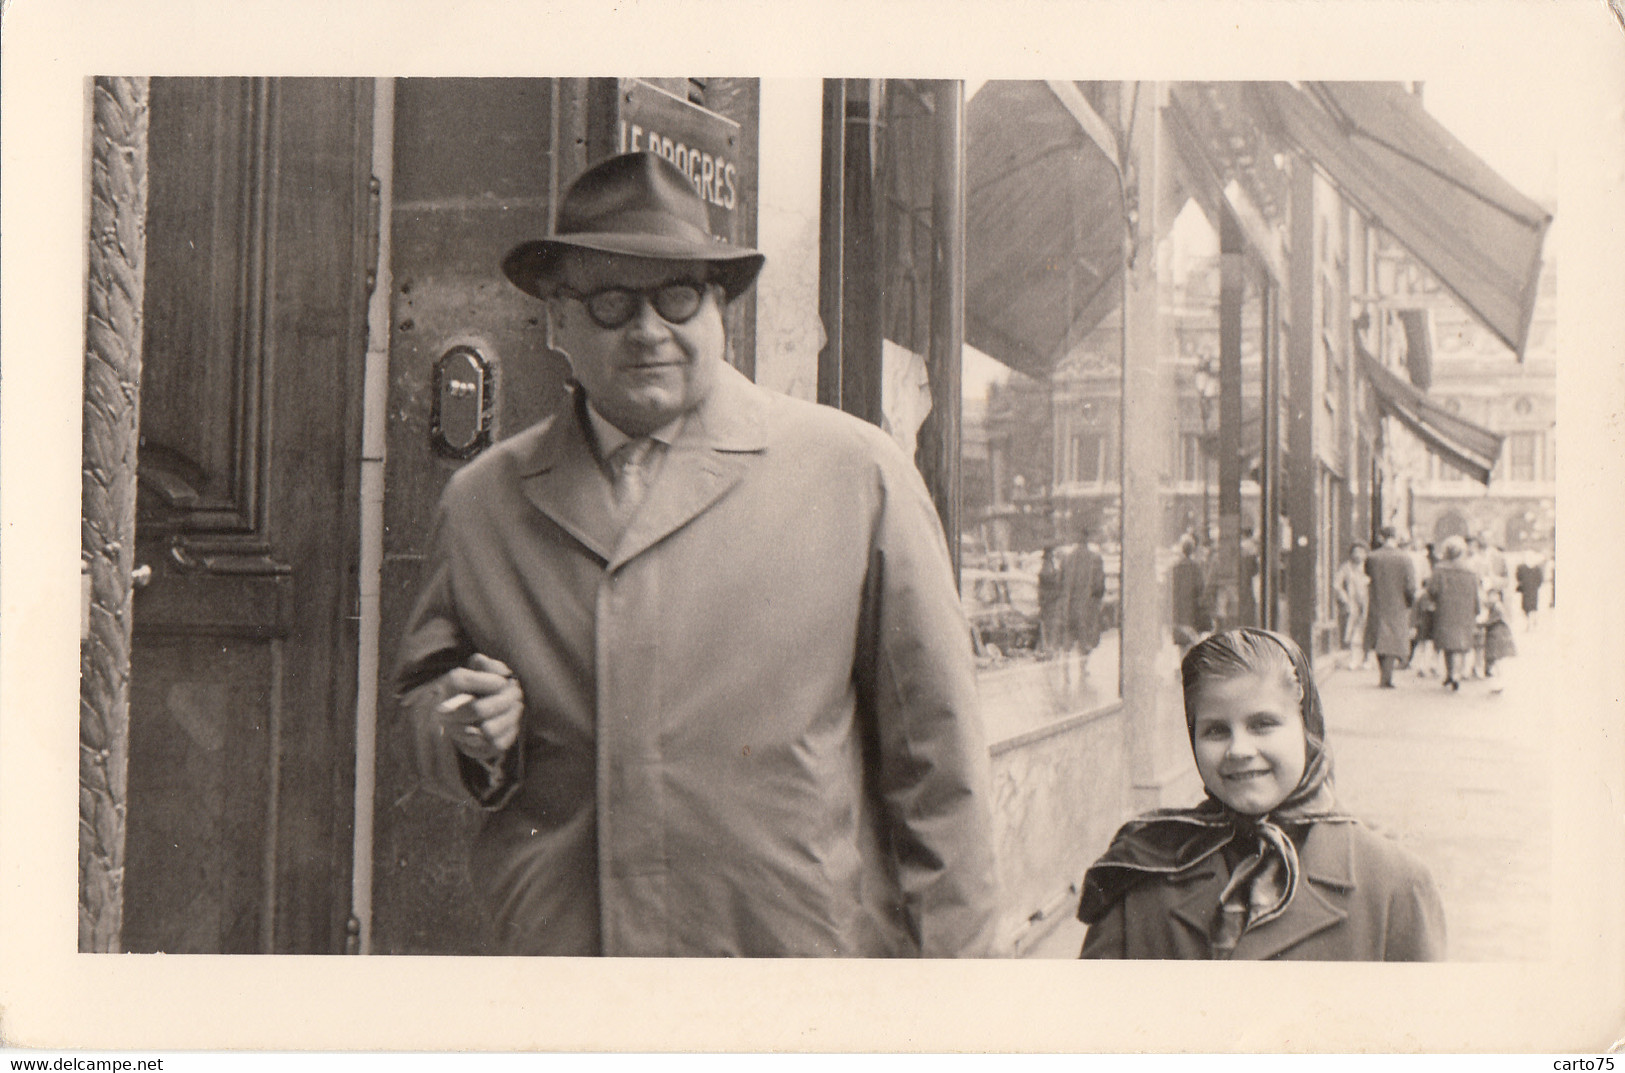 Photographie - Carte-Photo - Père Et Fille Marchant Dans Rue D'une Grande Ville - Journal "Le Progrès" Lyon ? - 1961 - Fotografie